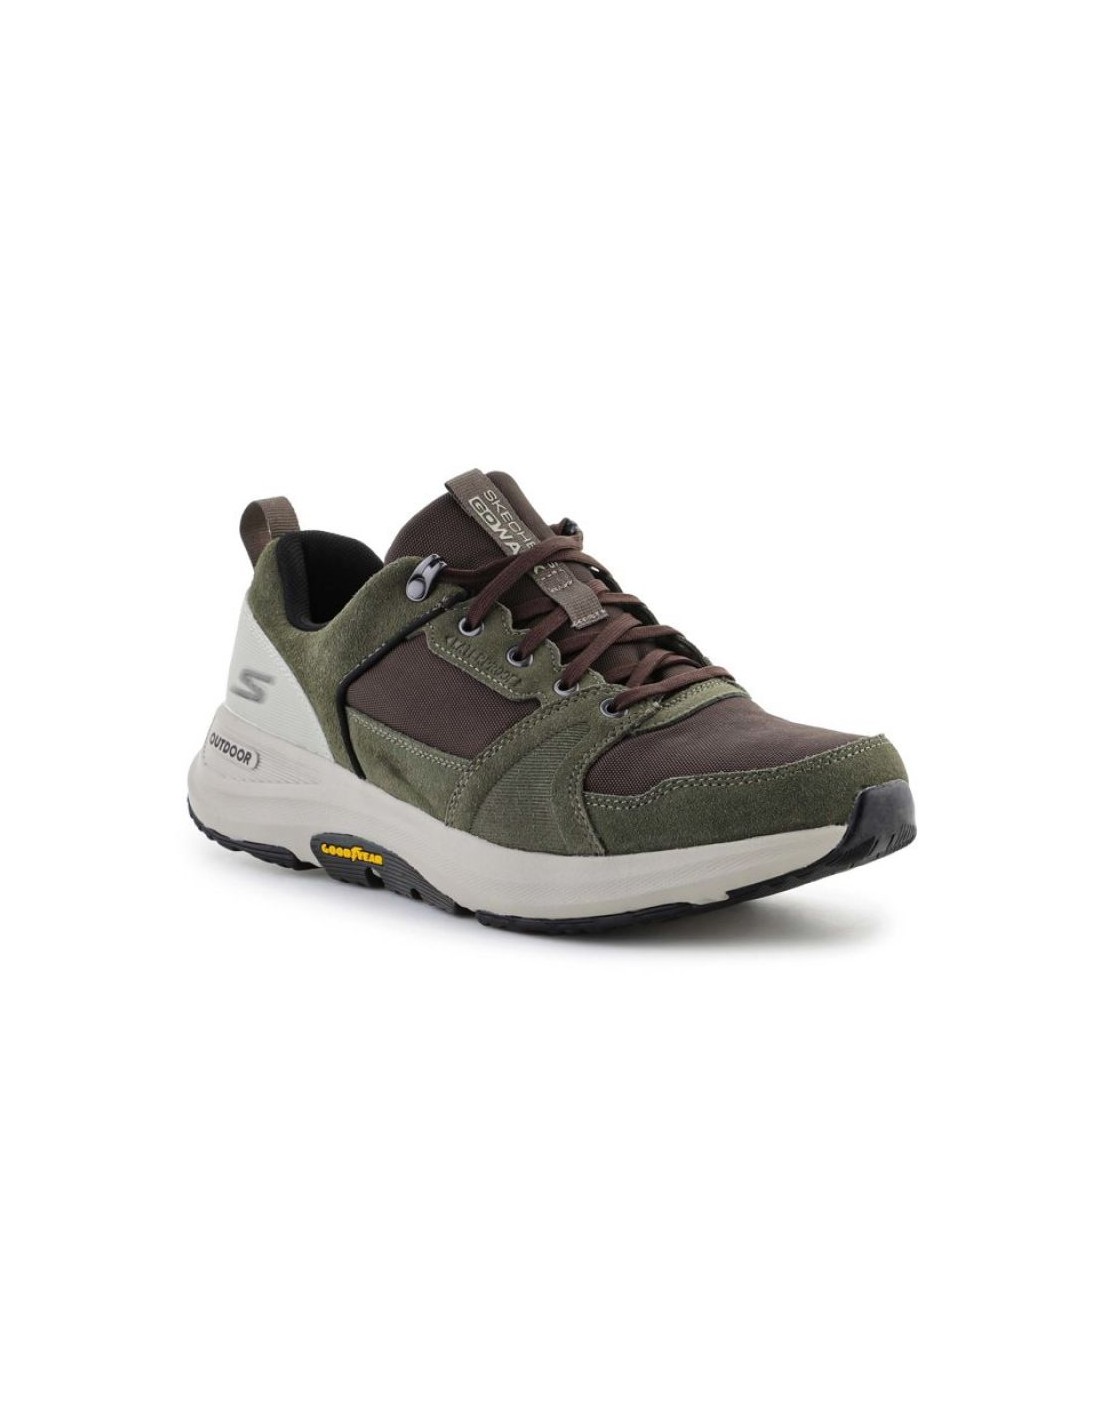 Skechers Go Walk Outdoor Shoes M 216106OLBR